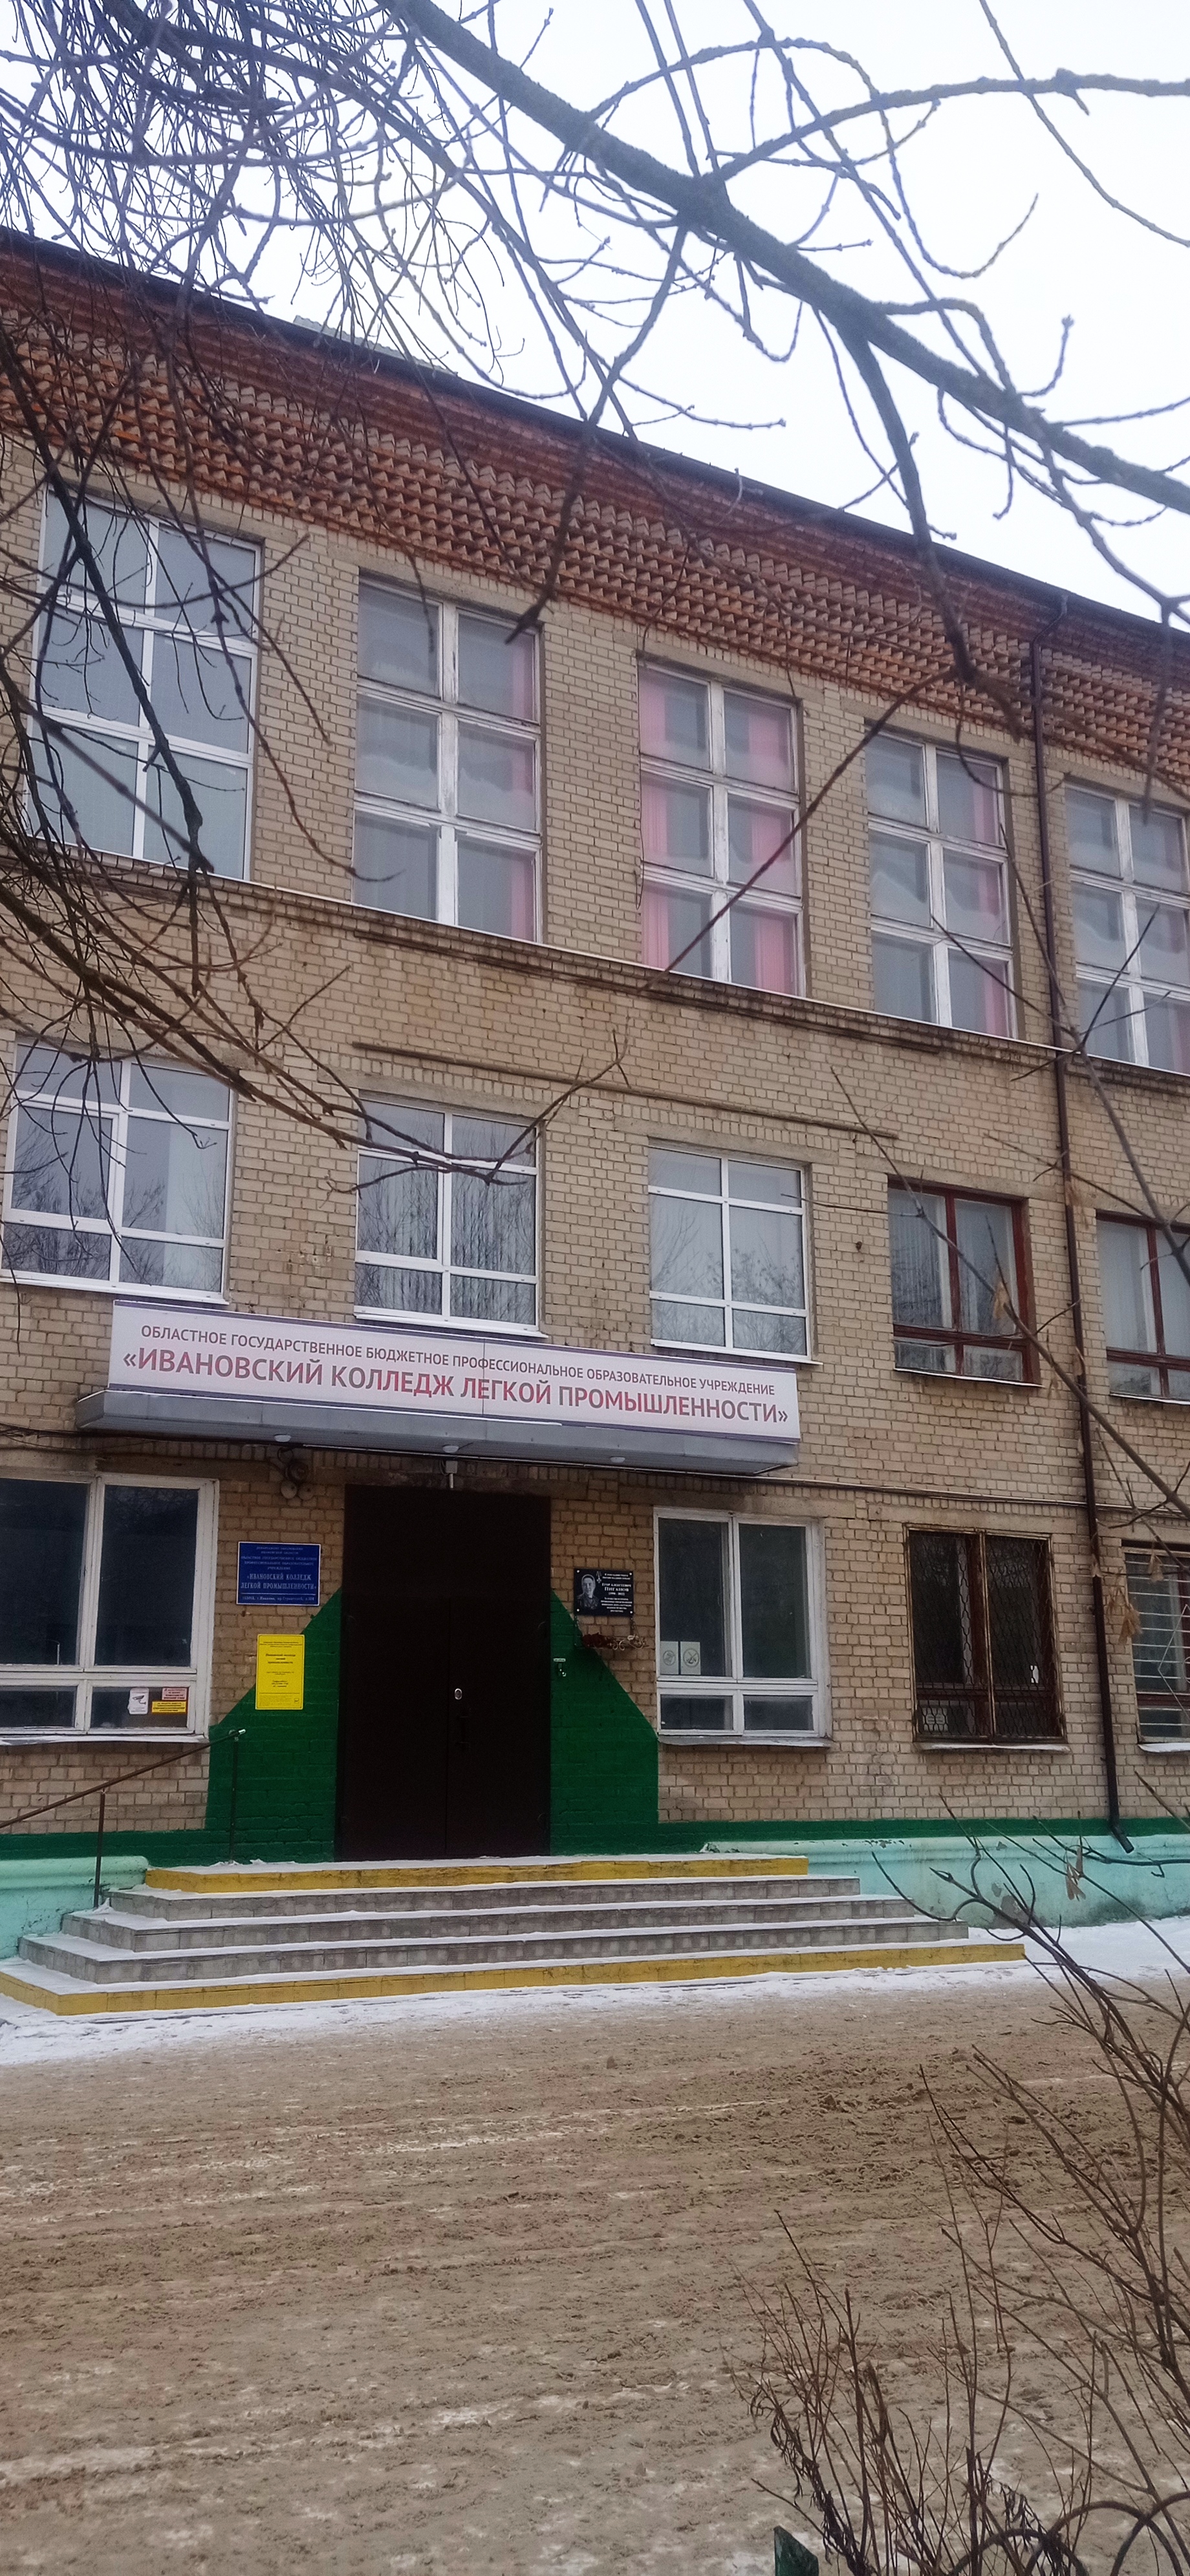 Ивановский колледж легкой промышленности, Иваново.